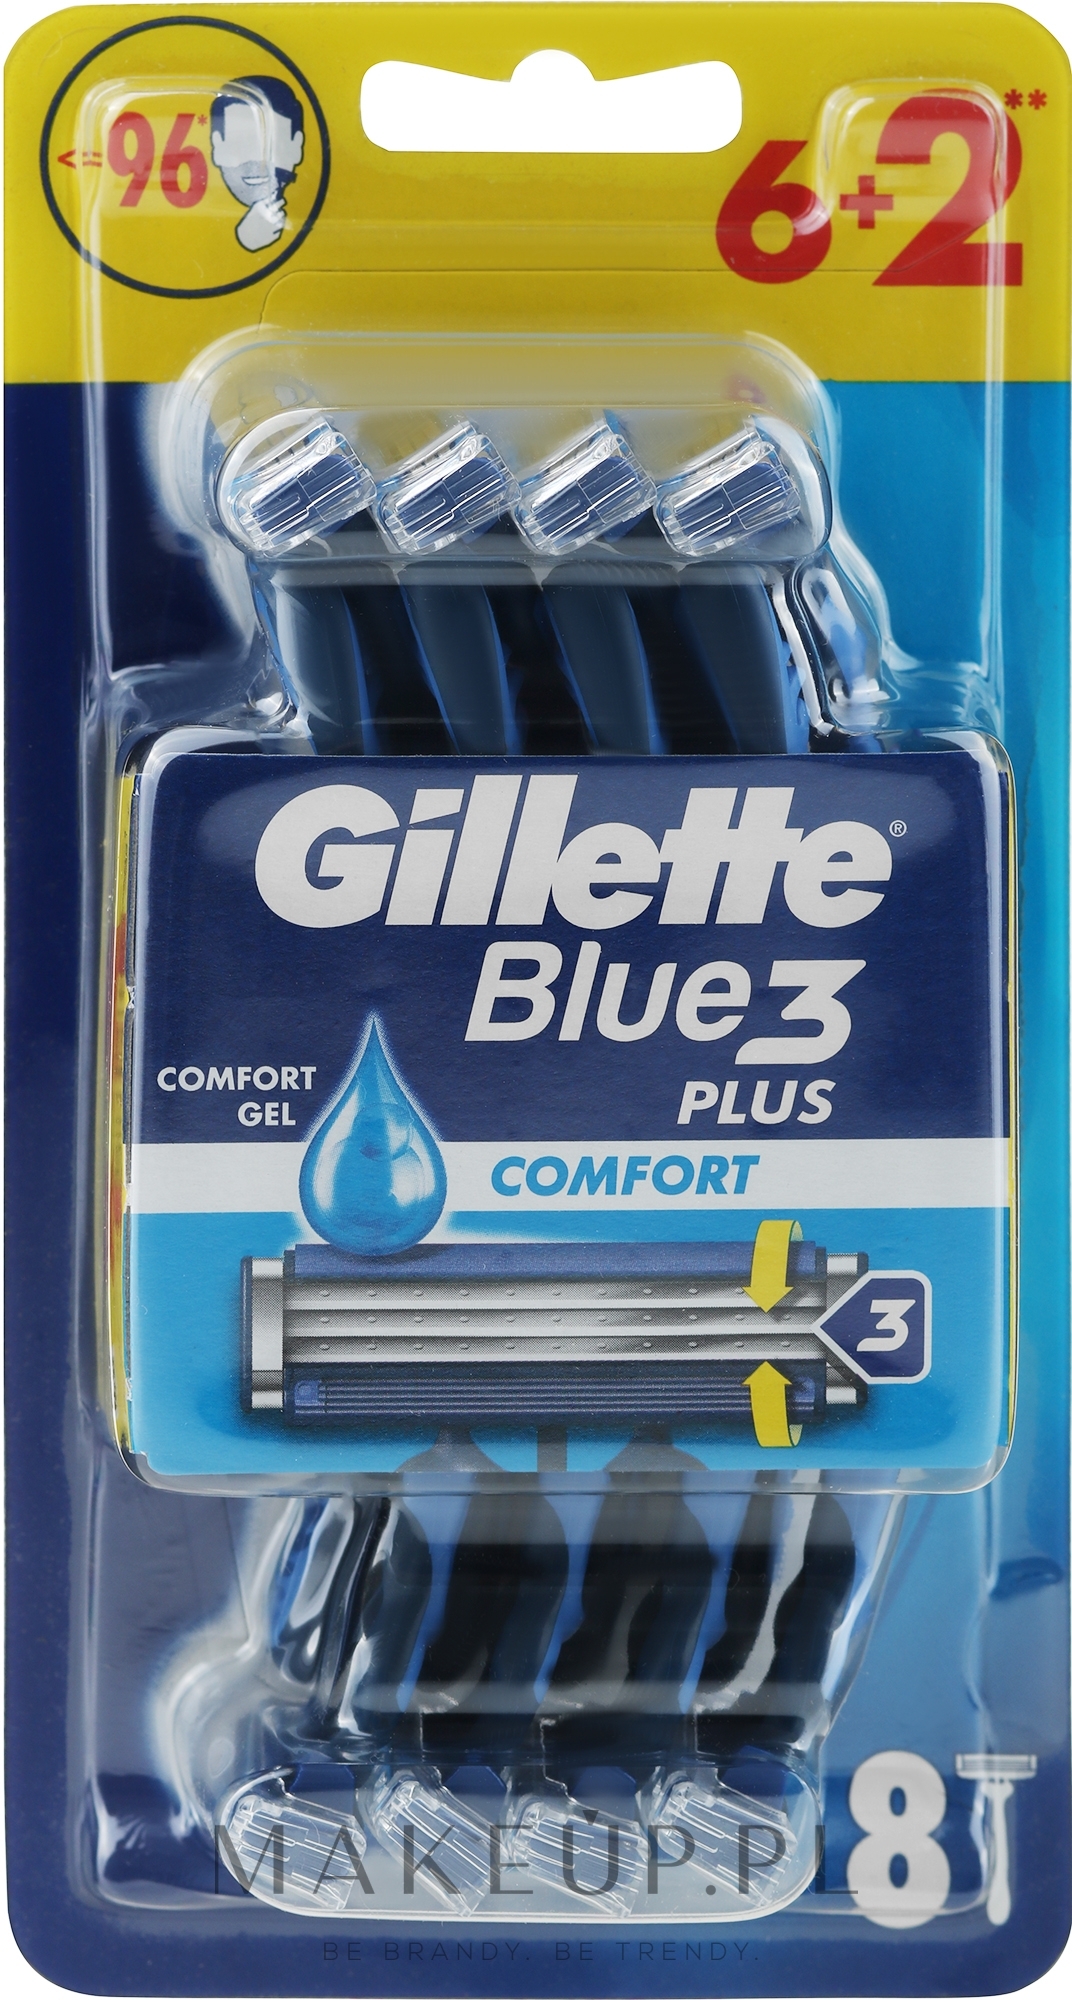 Zestaw jednorazowych maszynek do golenia, 6 + 2 szt. - Gillette Blue 3 Comfort — Zdjęcie 8 szt.